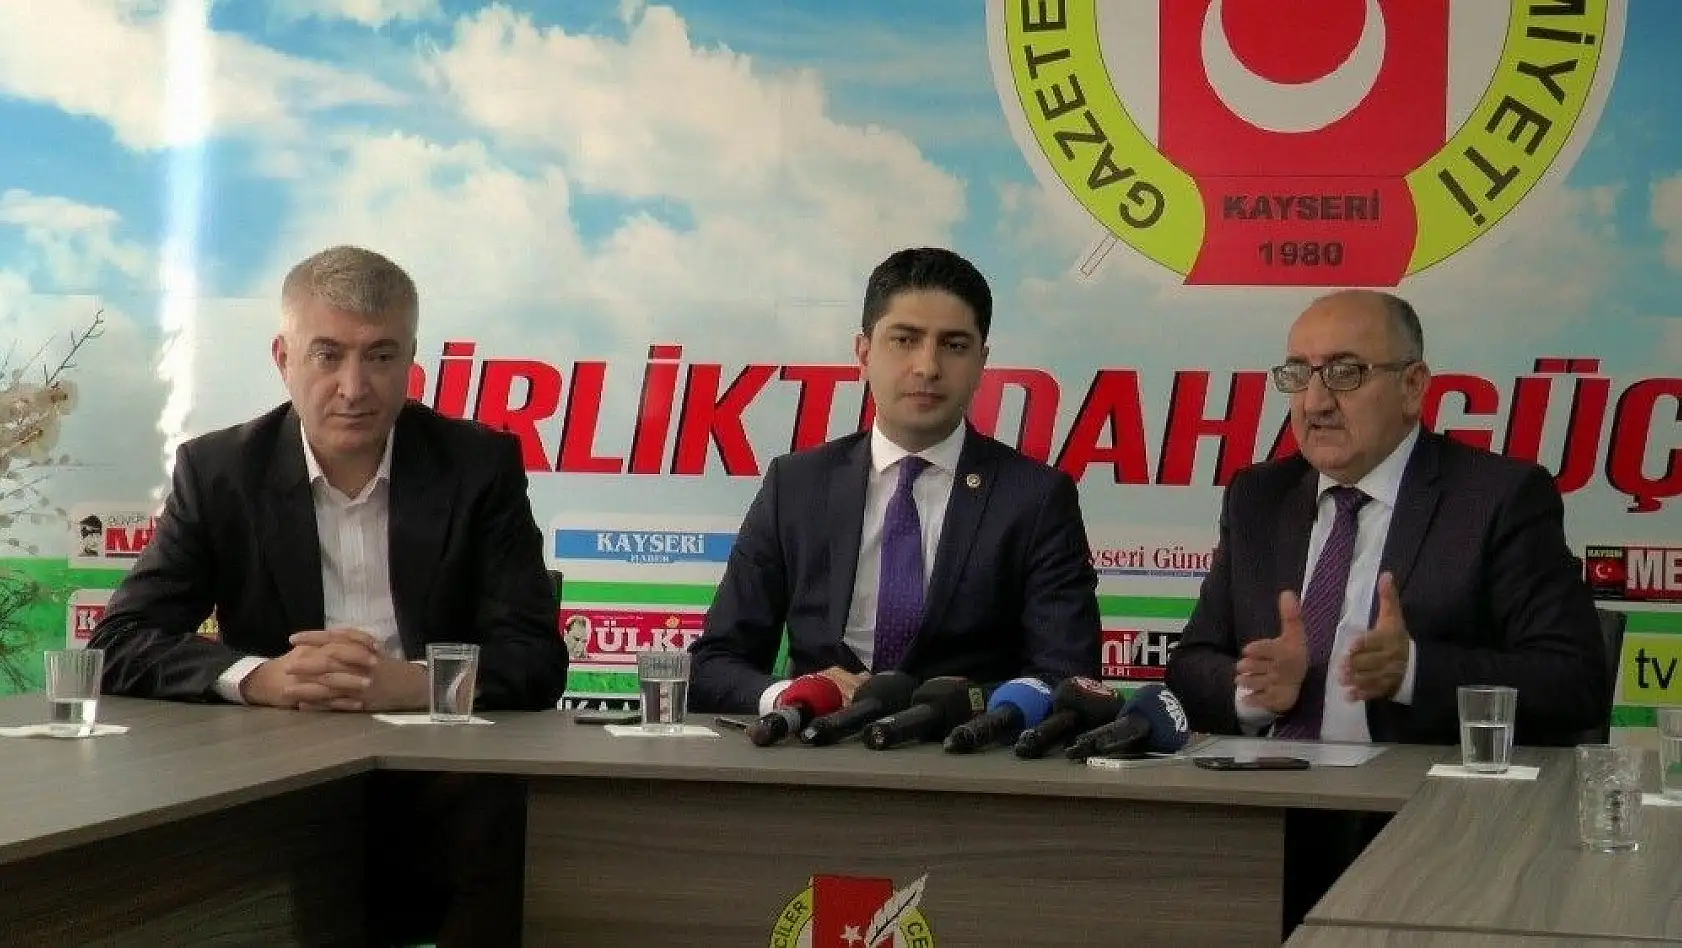 Milletvekili Özdemir: Seçimlere yarın yapılacakmış gibi hazırız